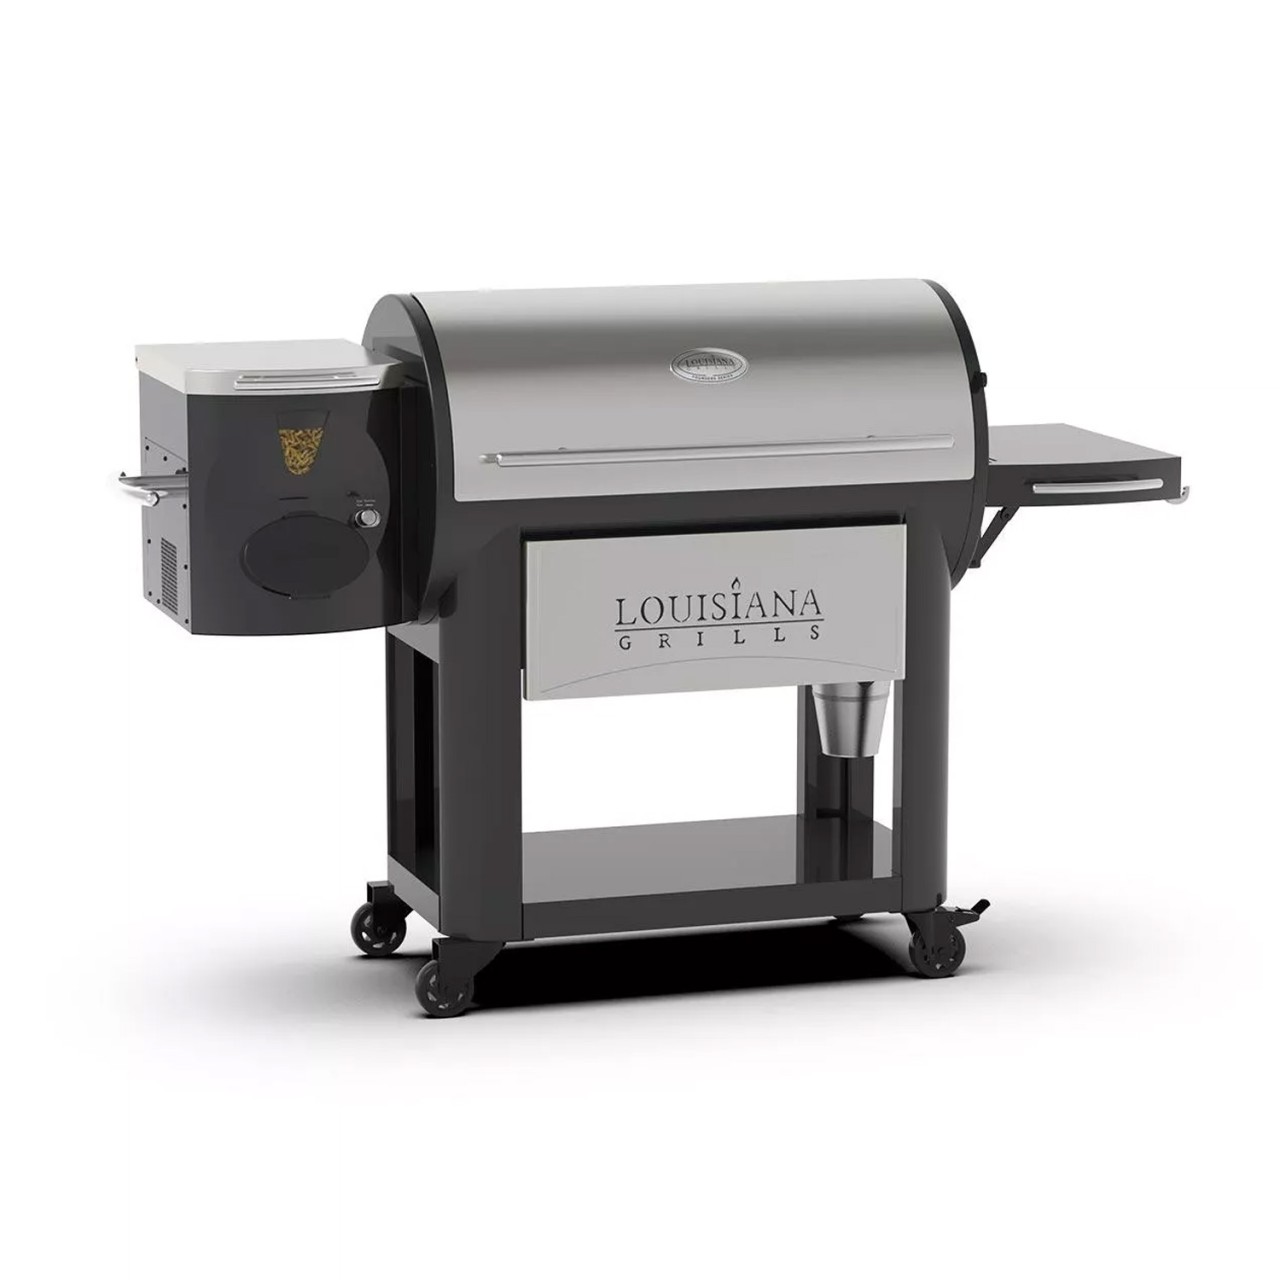 LOUISIANA Grills – LG 1200 FL BLACK LABEL Pellet Grill – Smoker mit…